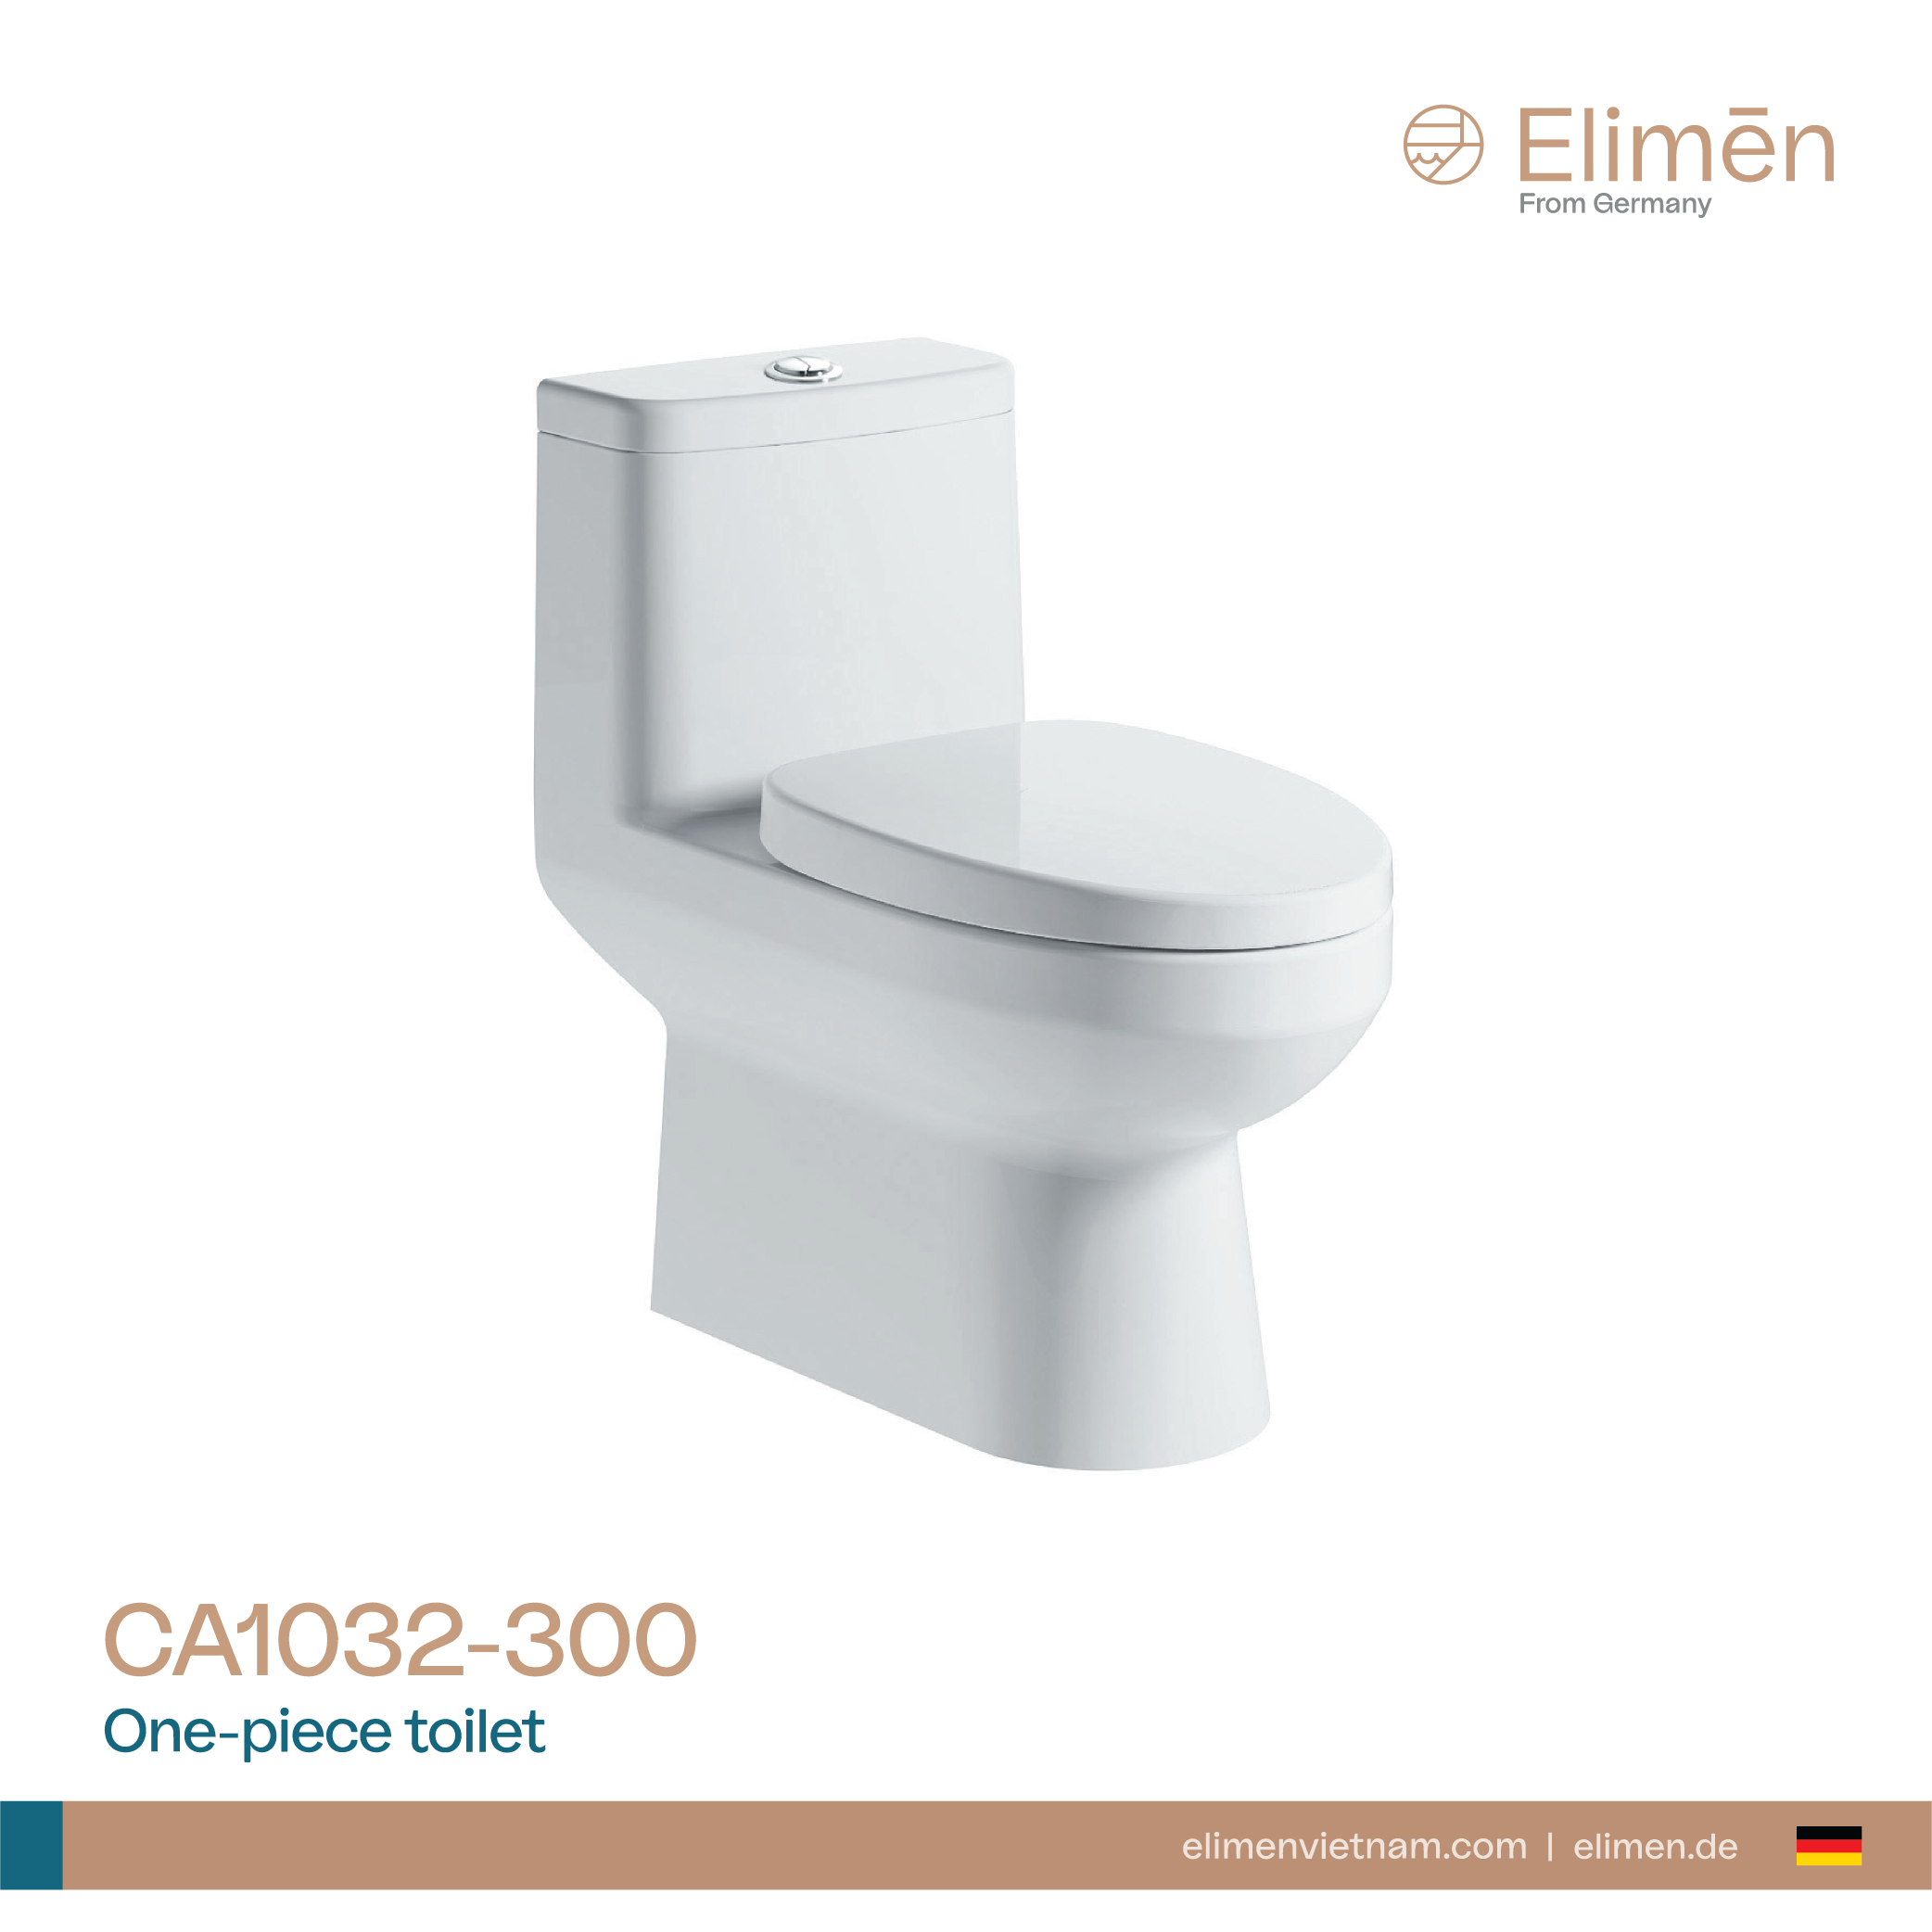 Elimen One-piece toilet - Code CA1032-30